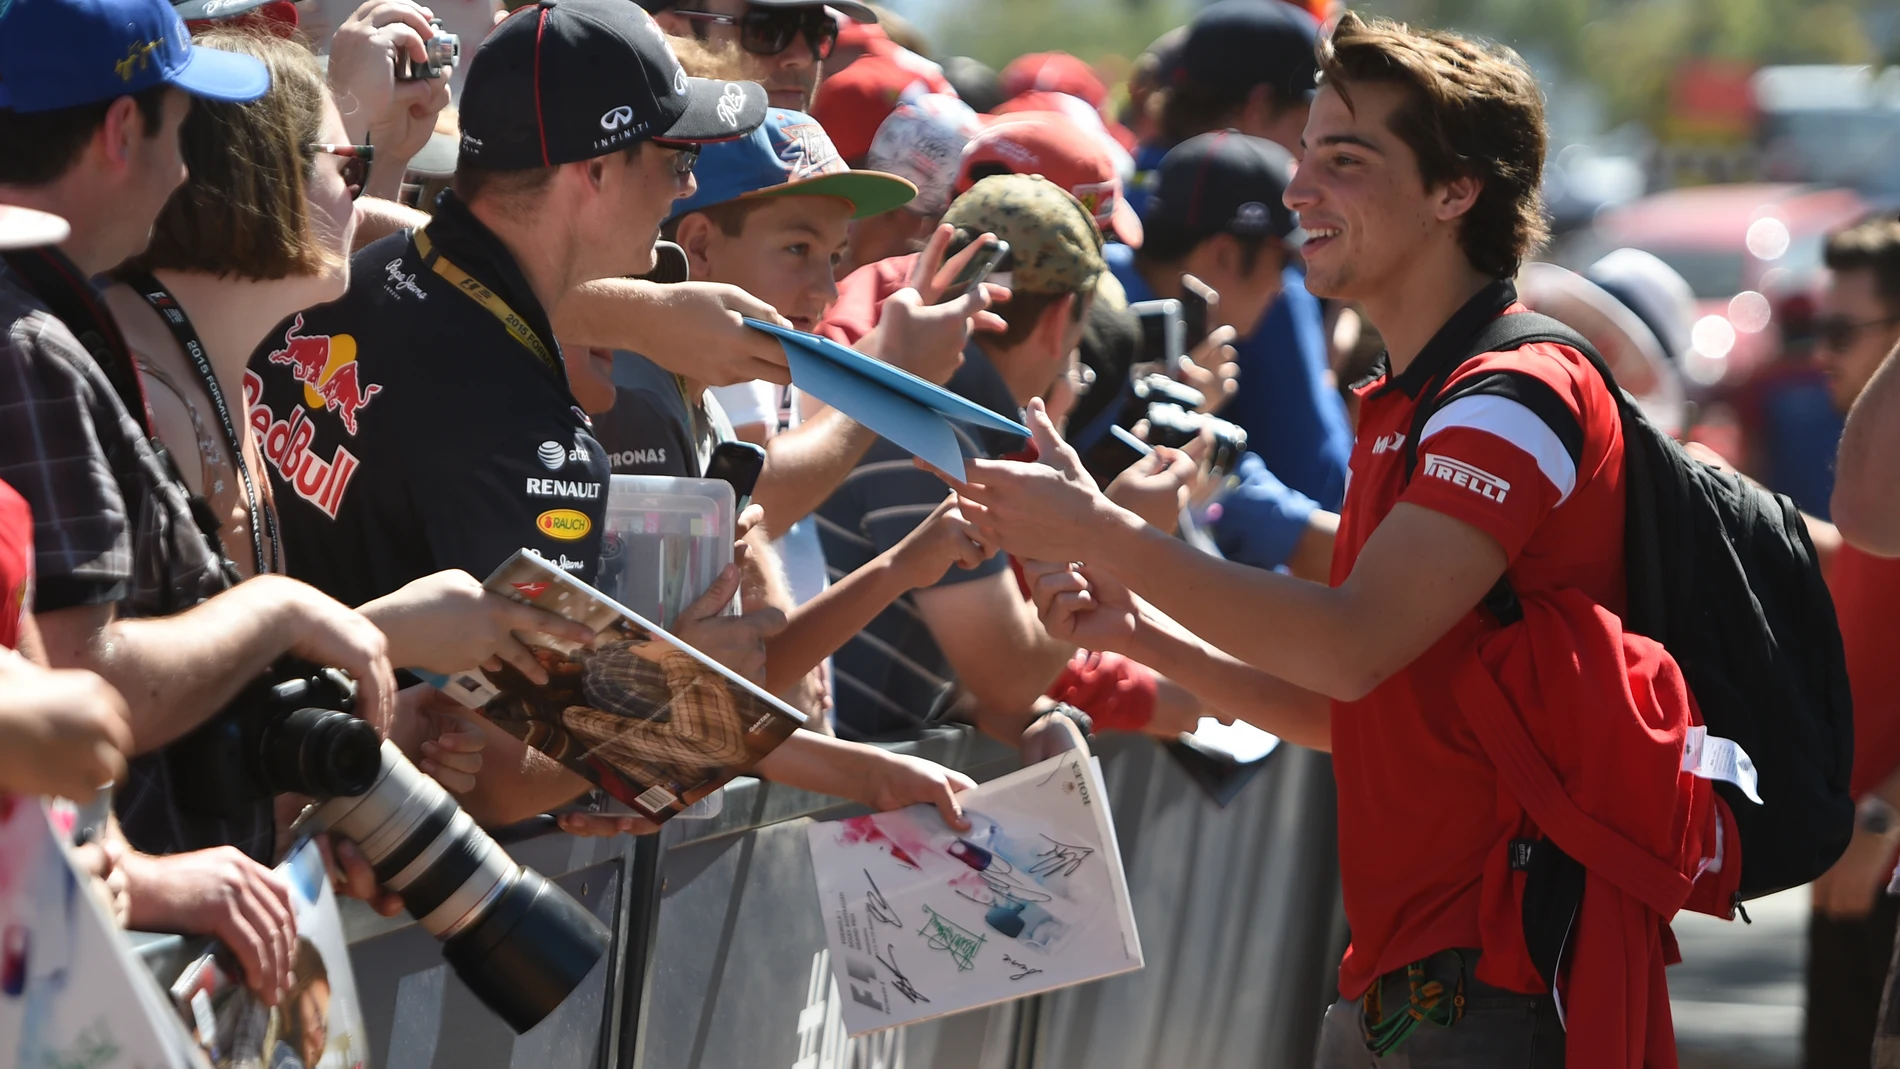 Roberto Merhi en el GP de Australia firmando autógrafos